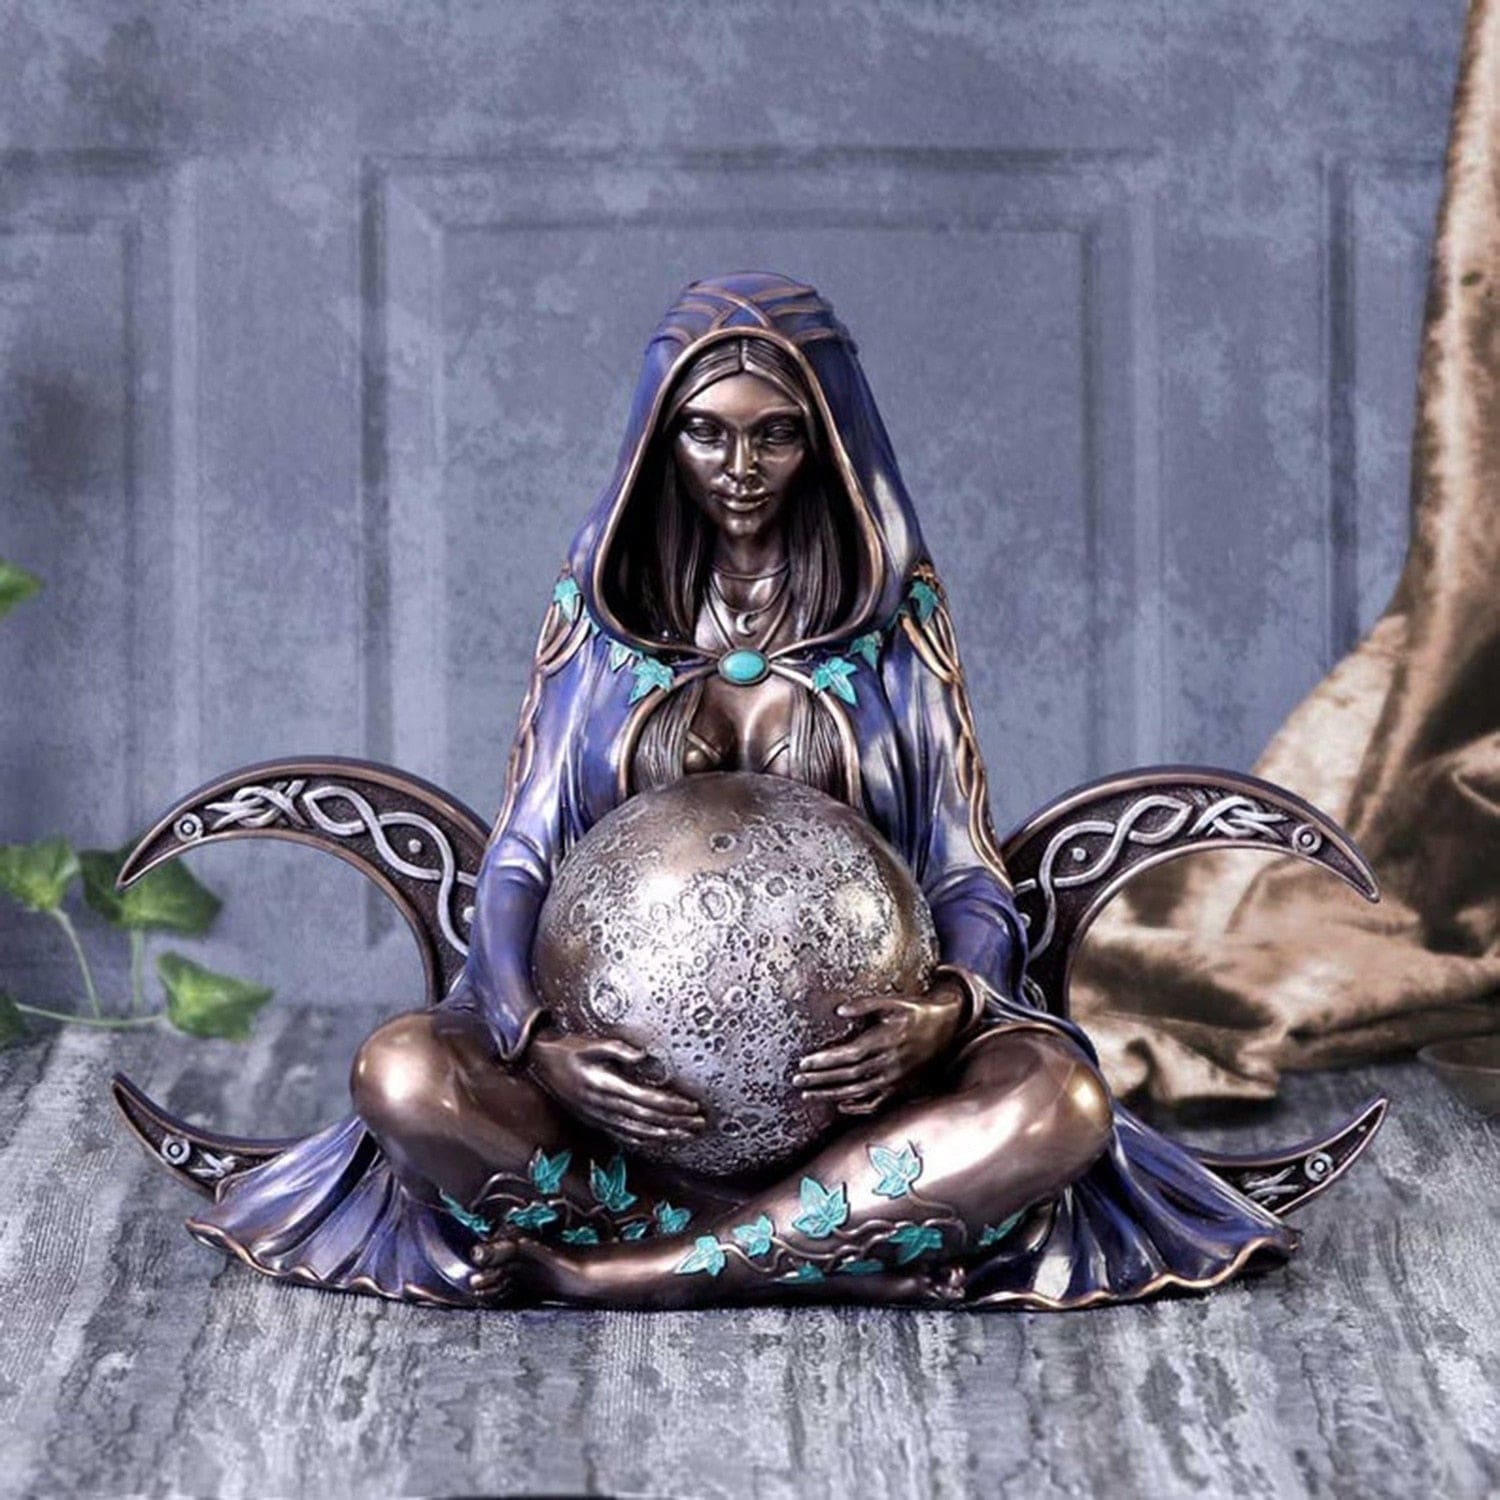 Mother Gaia Ornate Alter Statue - statue